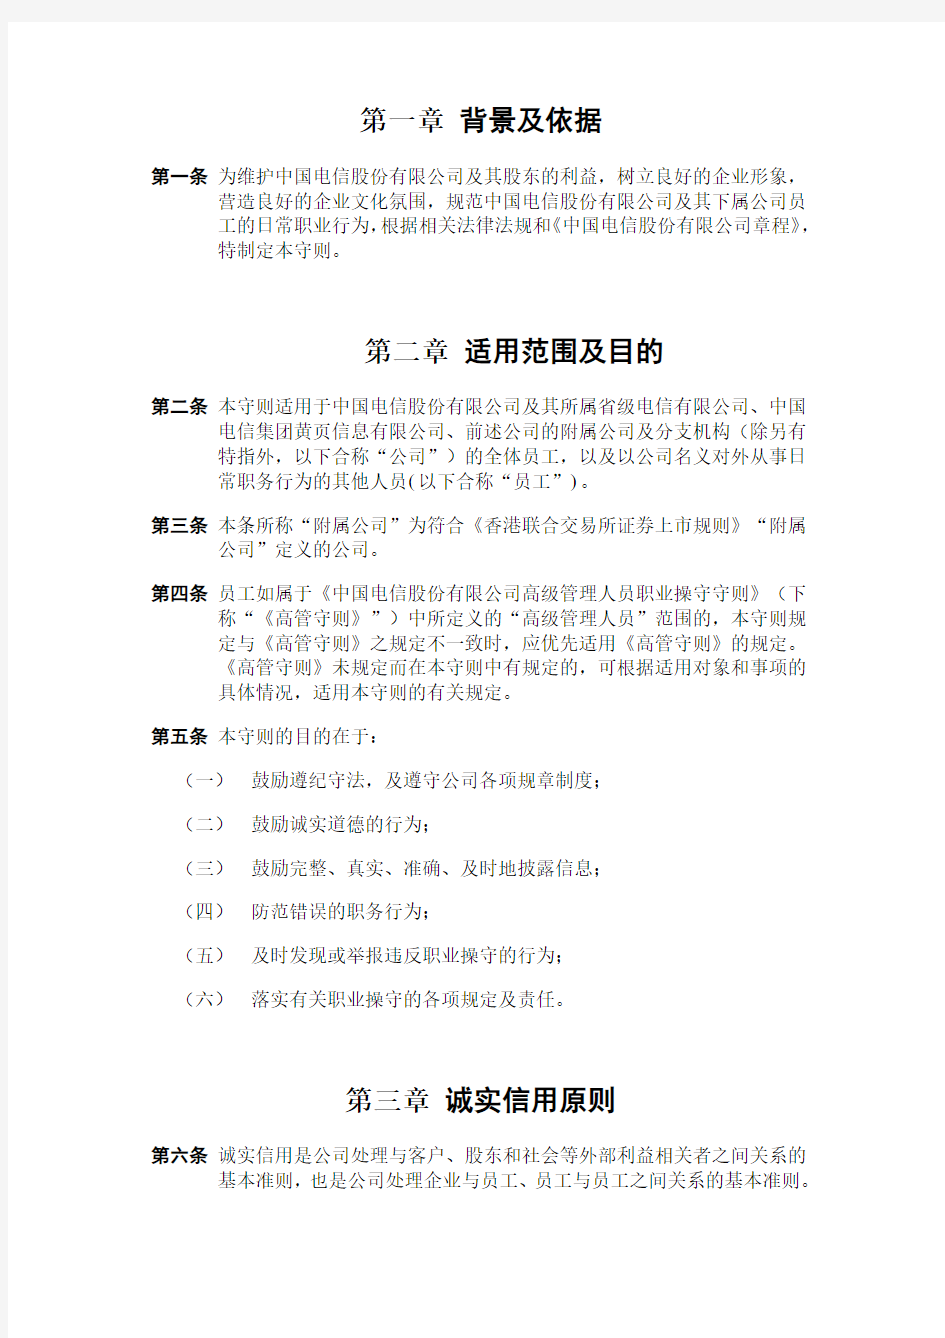 中国电信股份有限公司员工职业操守守则